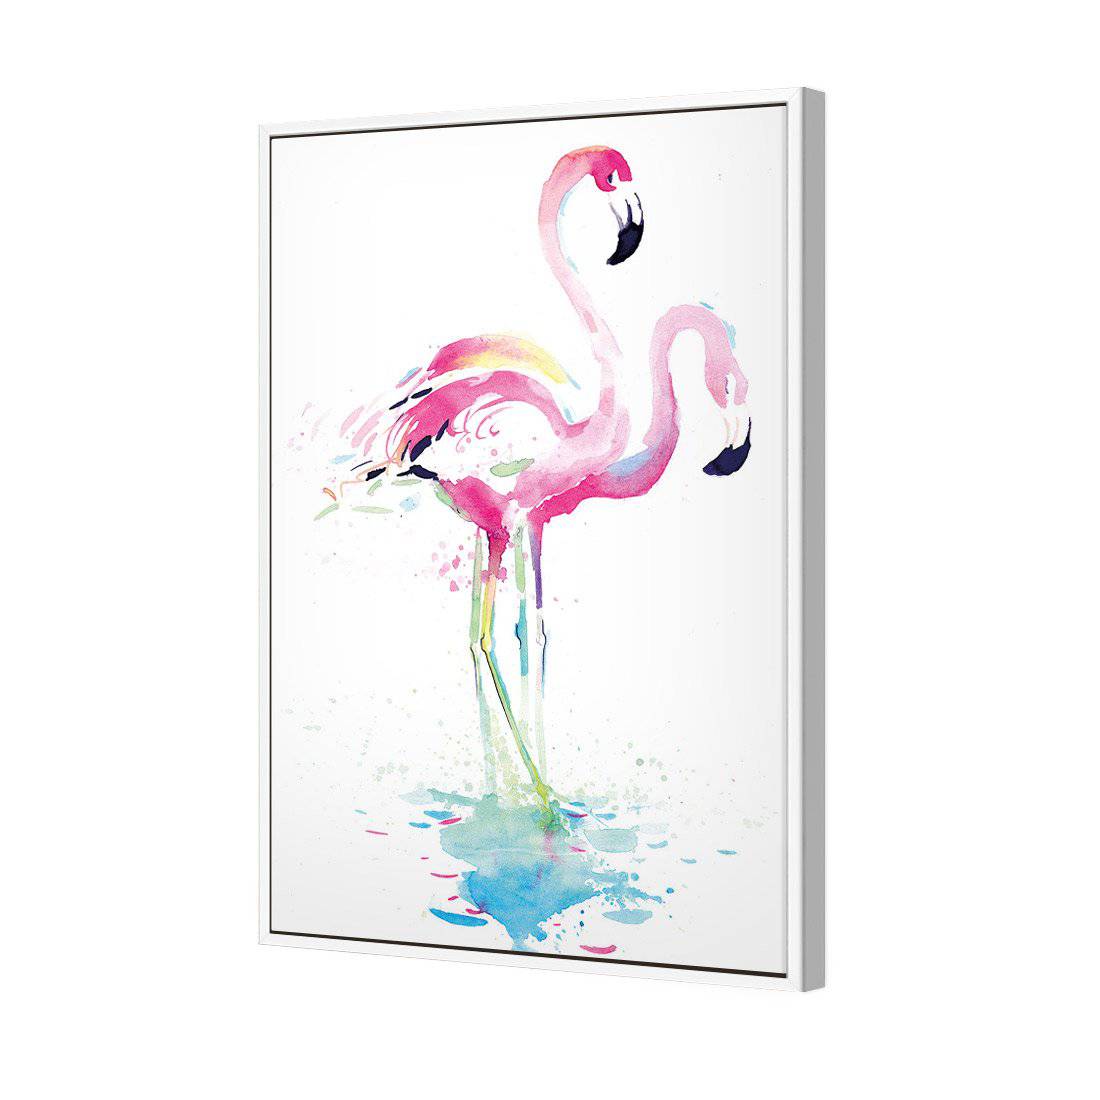 Flirty Flamingos Canvas Art-Canvas-Wall Art Designs-45x30cm-Canvas - White Frame-Wall Art Designs